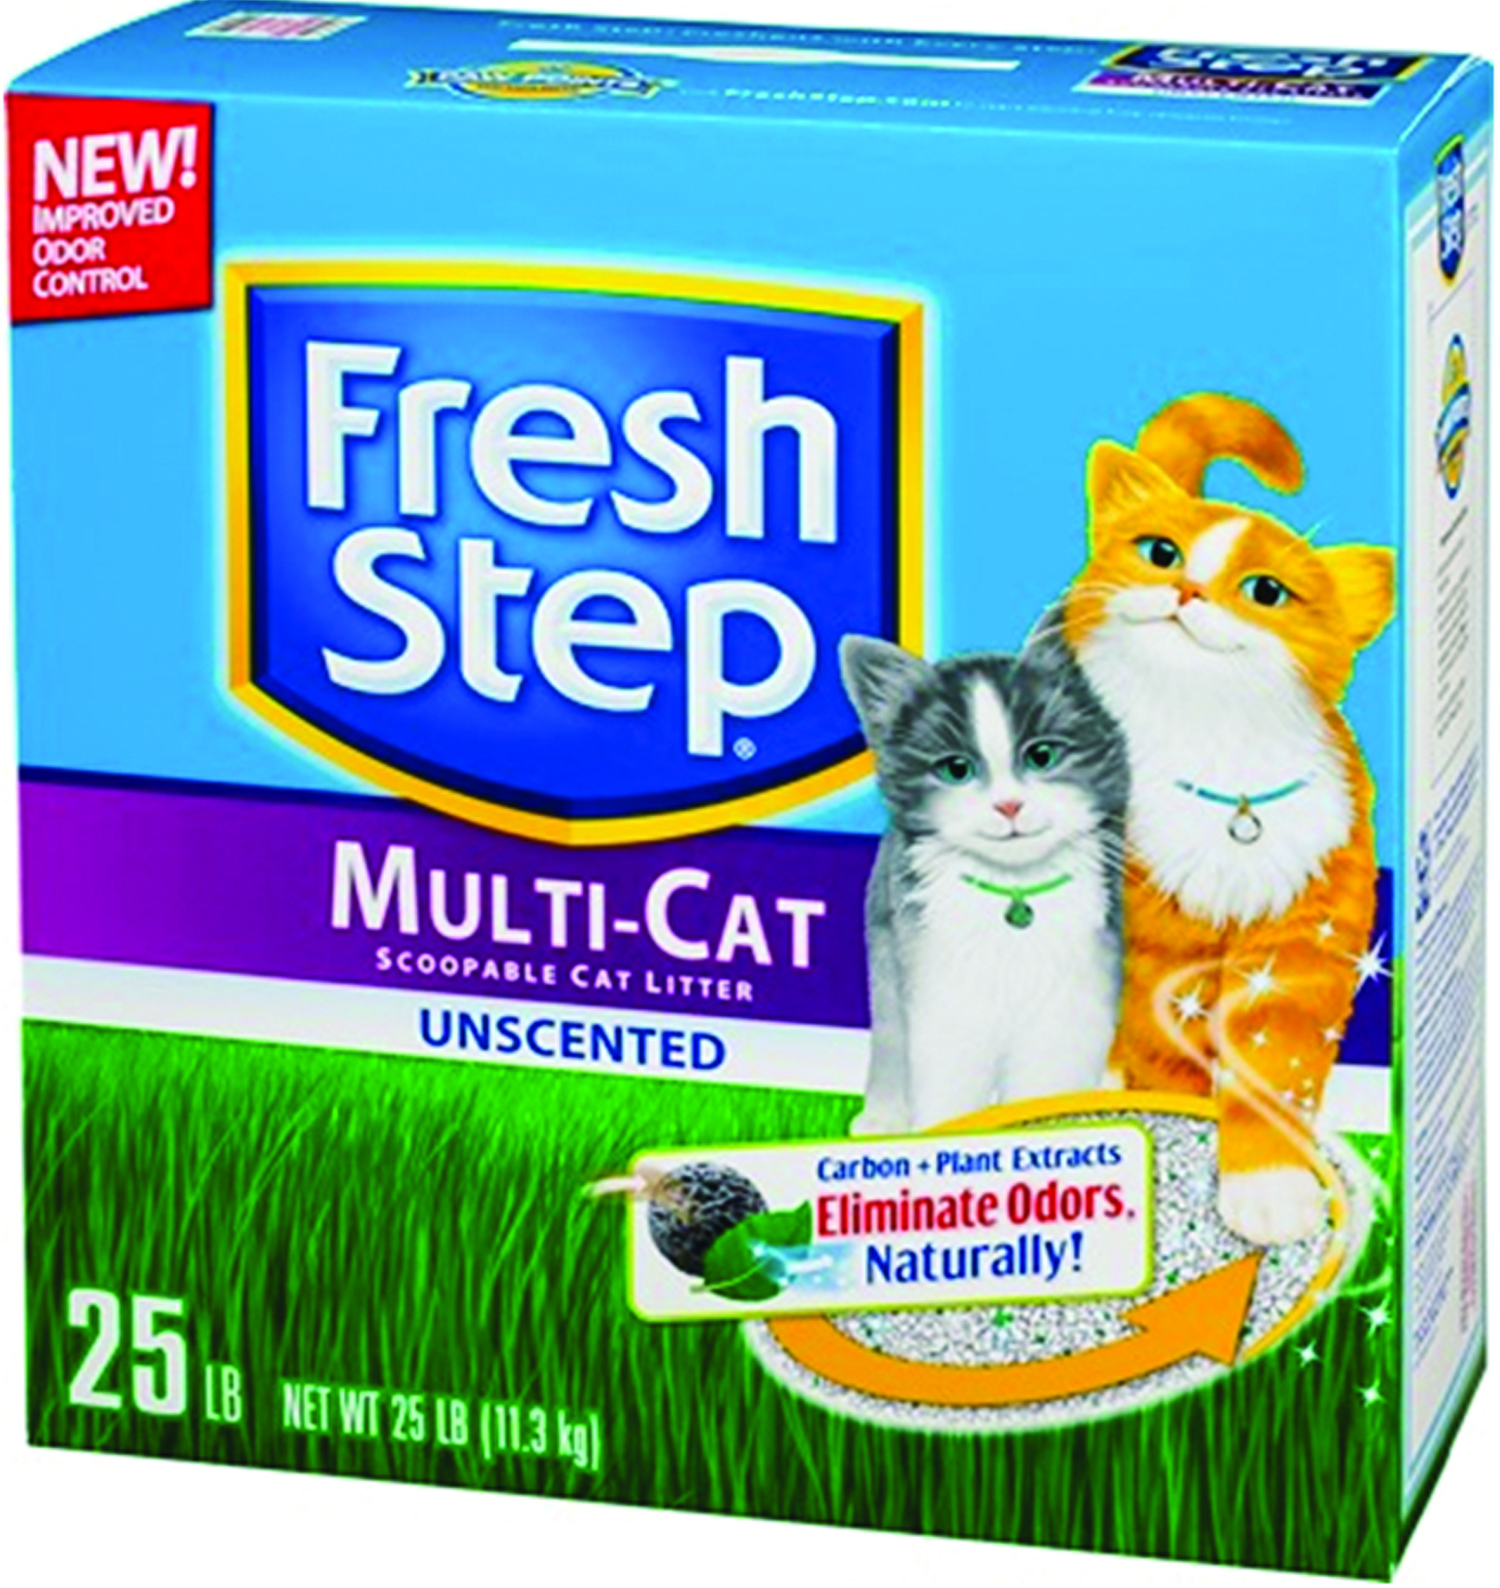 FRESH STEP MULTI-CAT LITTER